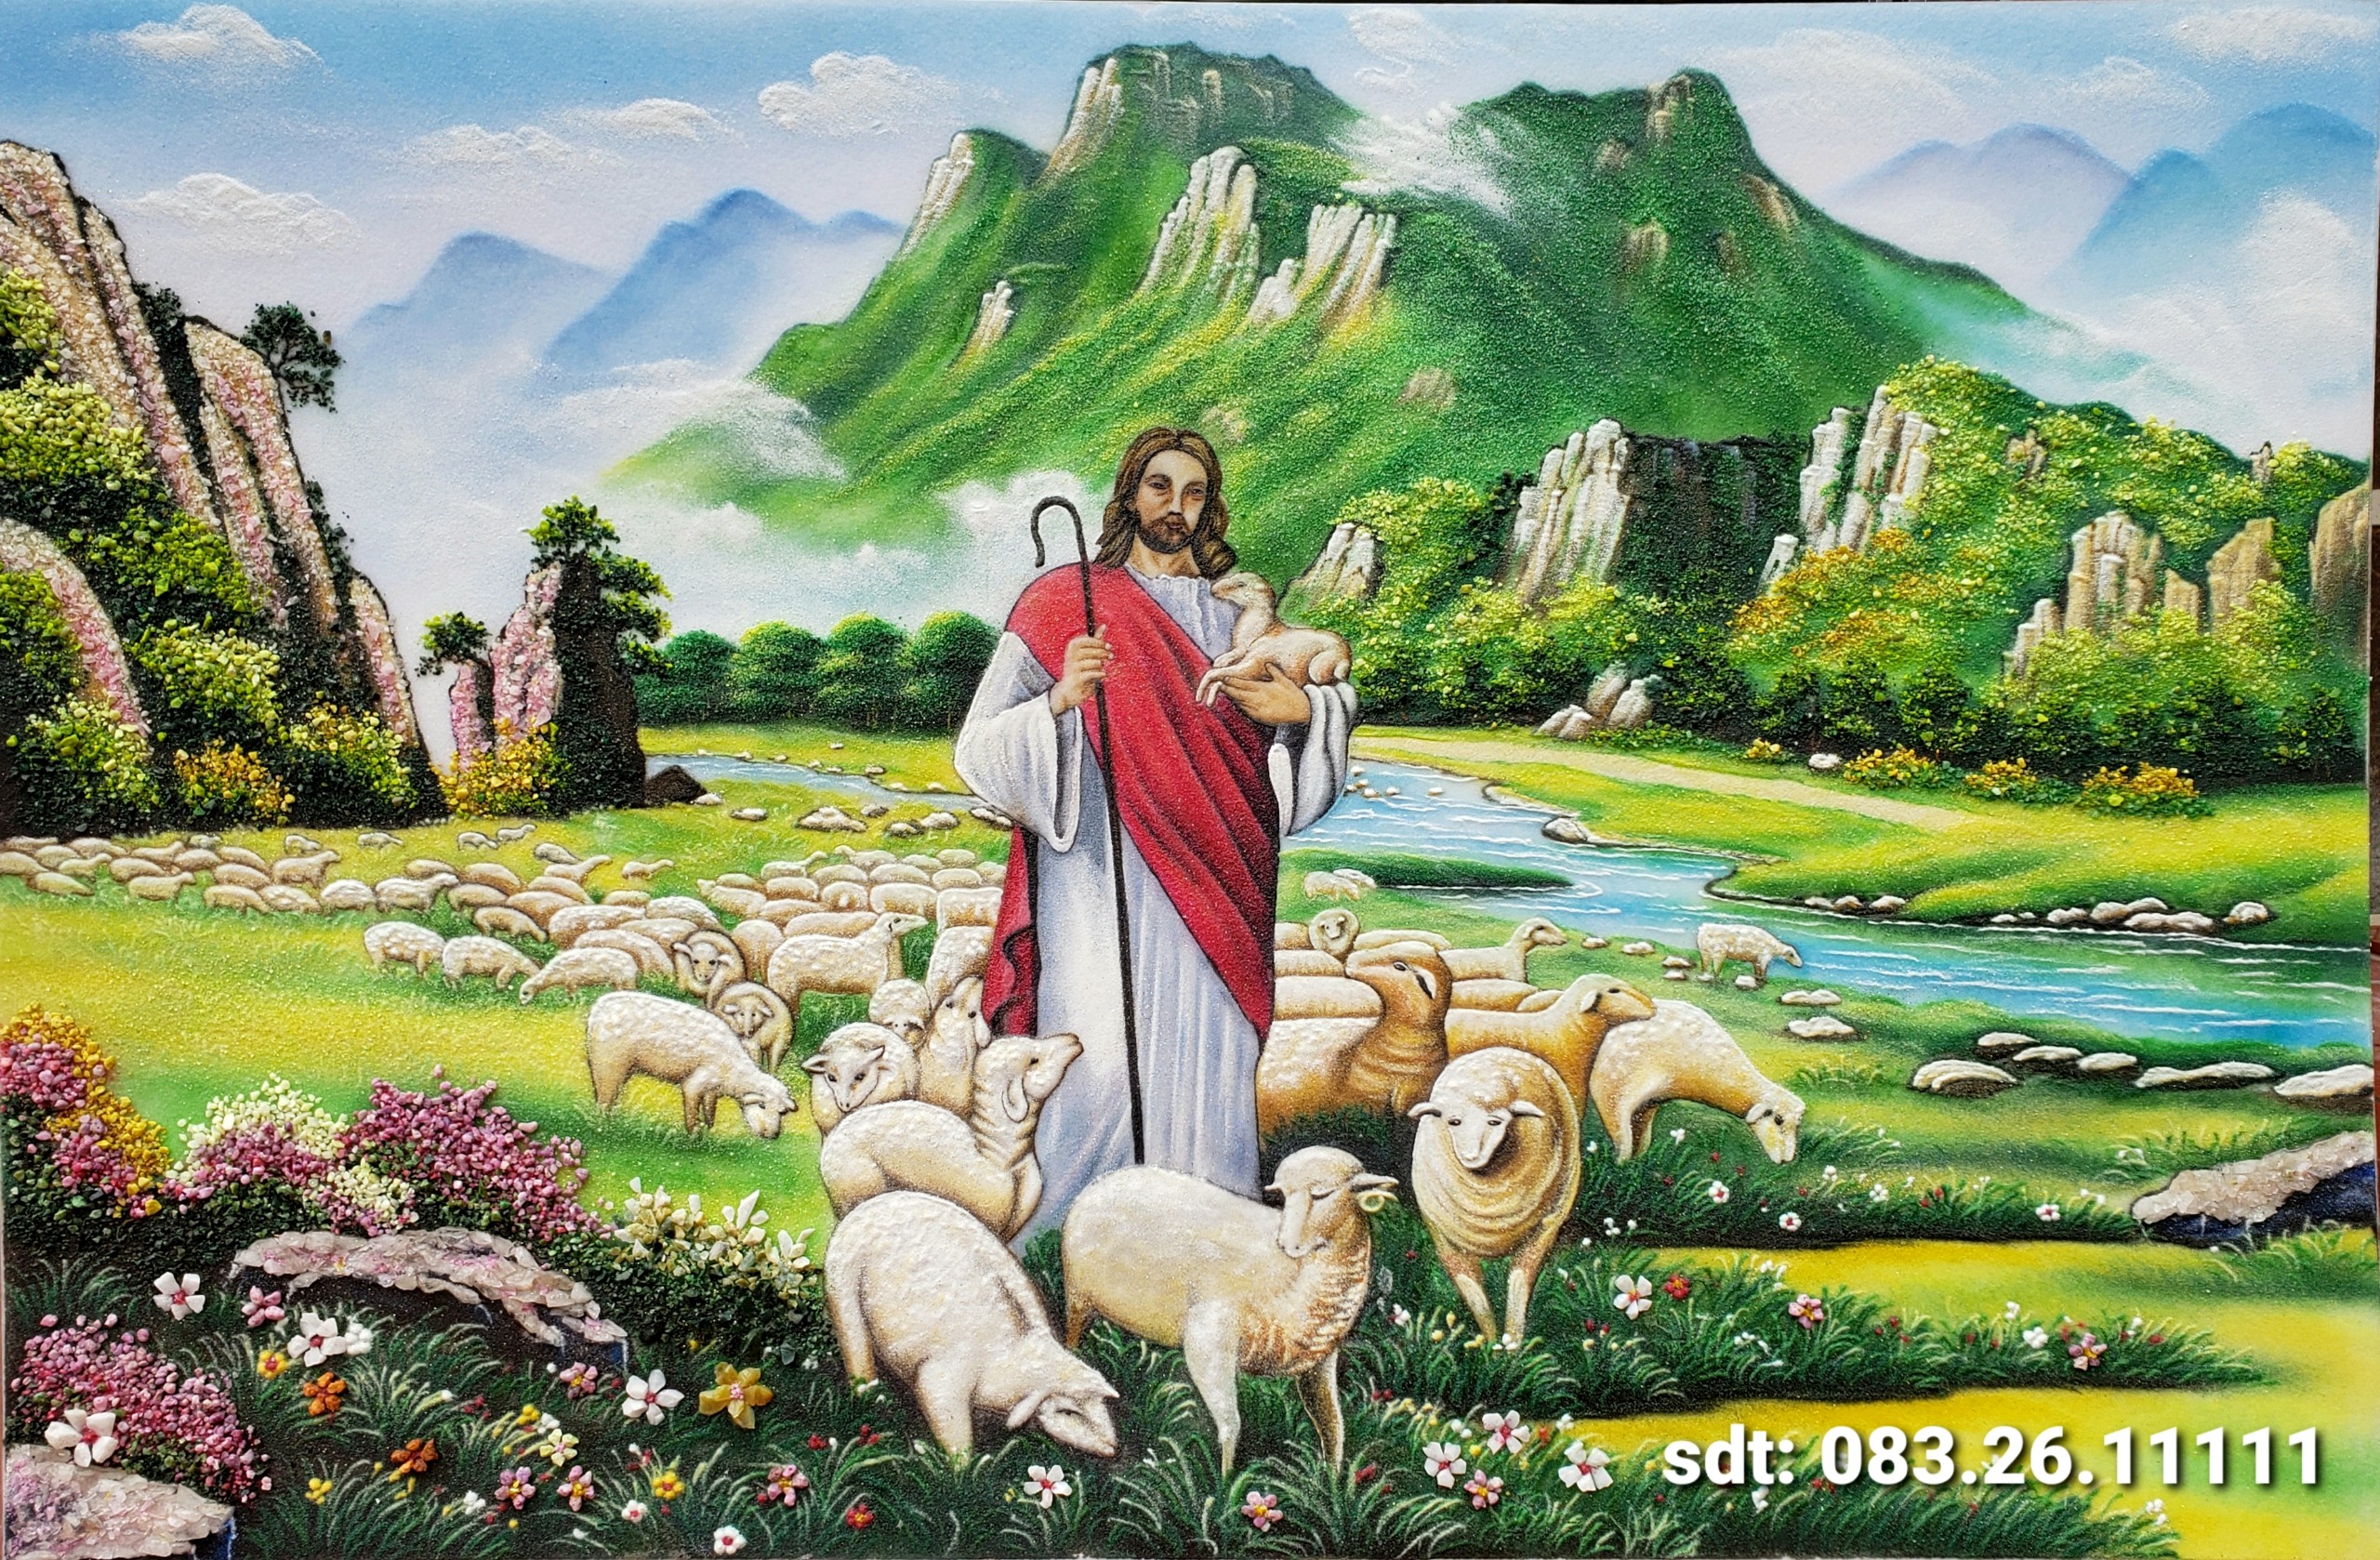 Hình  Tổng hợp những bức ảnh đẹp nhất về Chúa Giêsu Kitô  Facebook